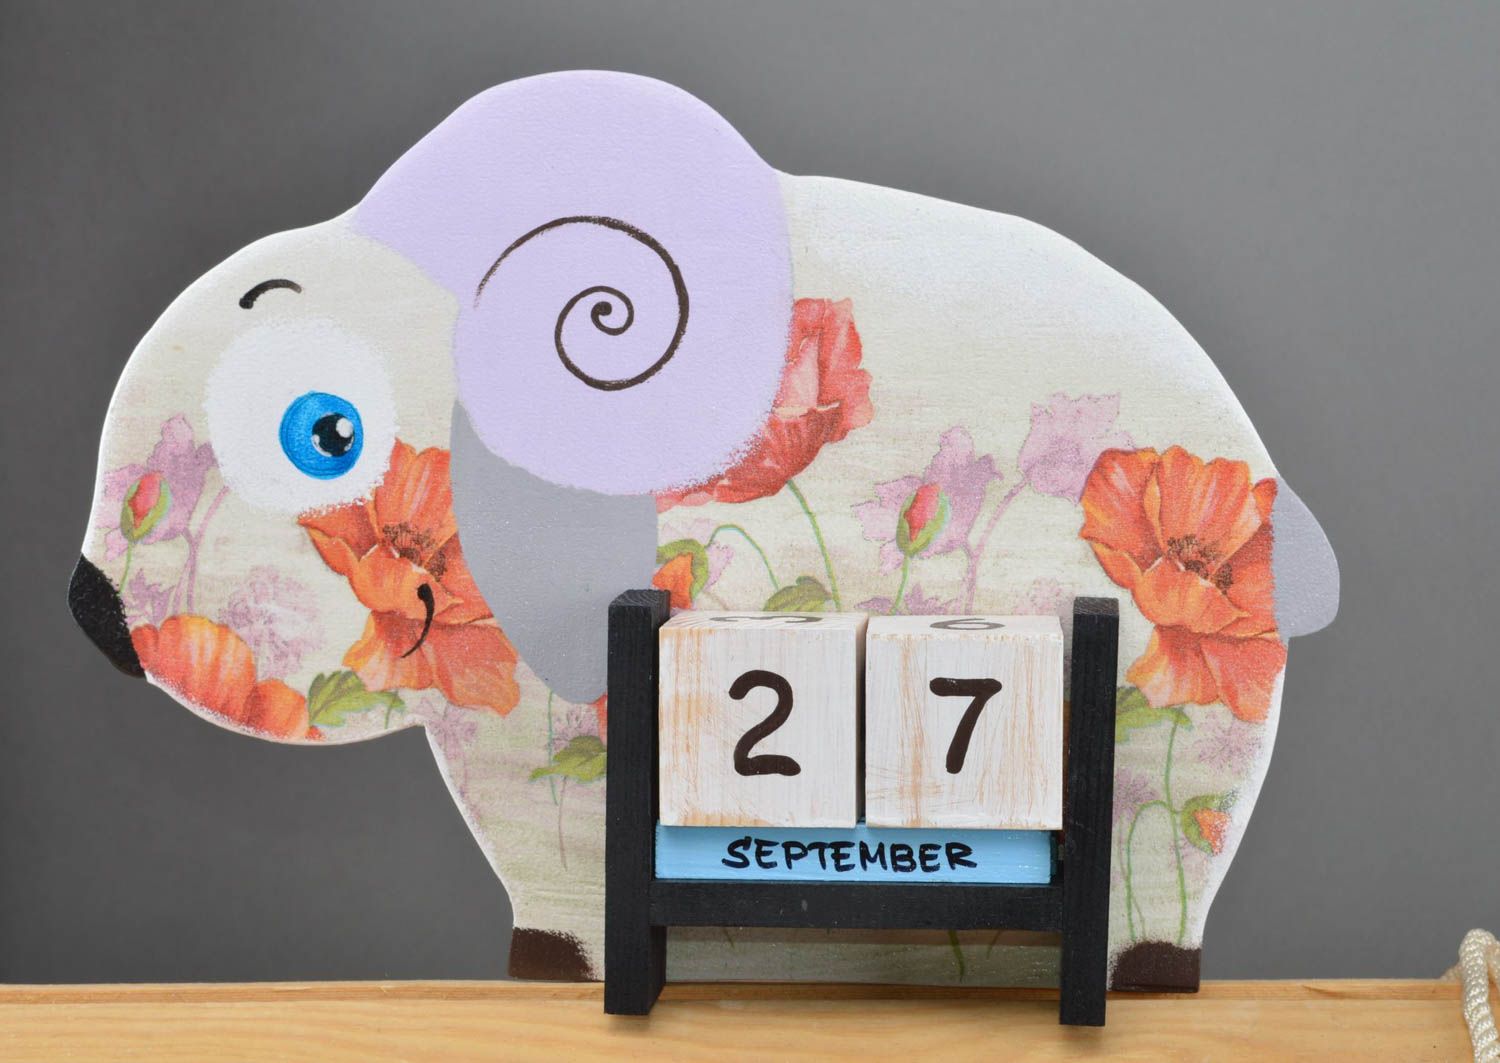 Календарь в виде овечки небольшой светлый красивый ручной работы цветной  фото 2